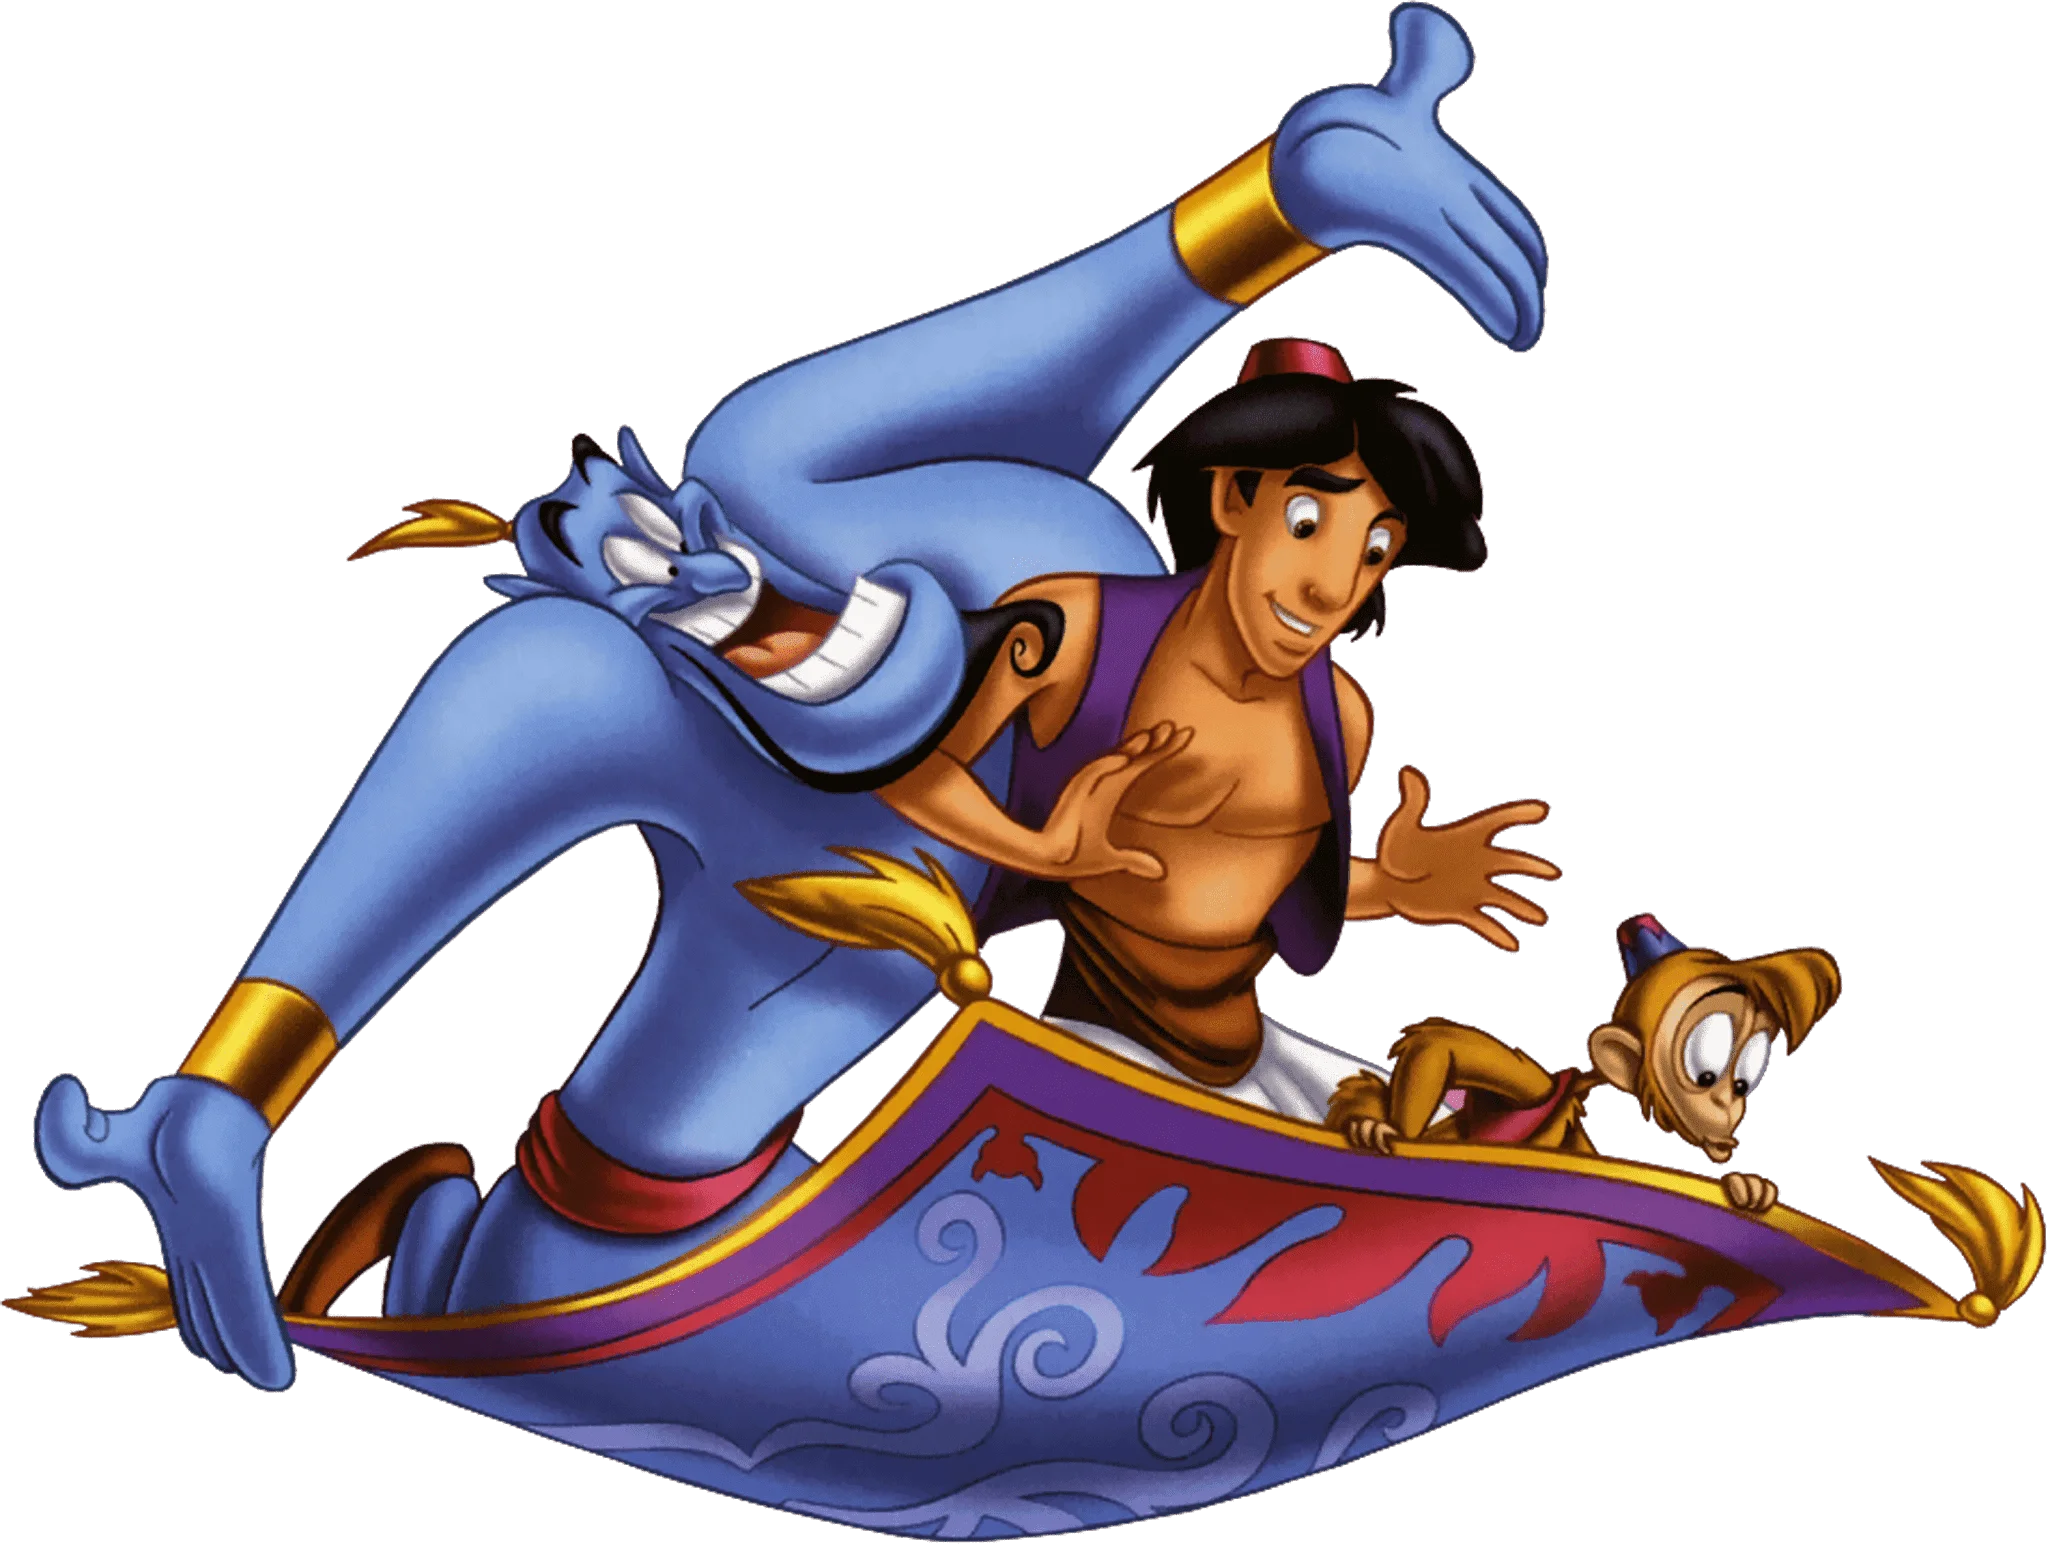 A história de Aladdin -  ilustração de Aladdin, o gênio da lâmpada e o macaco em cima do tapete mágico